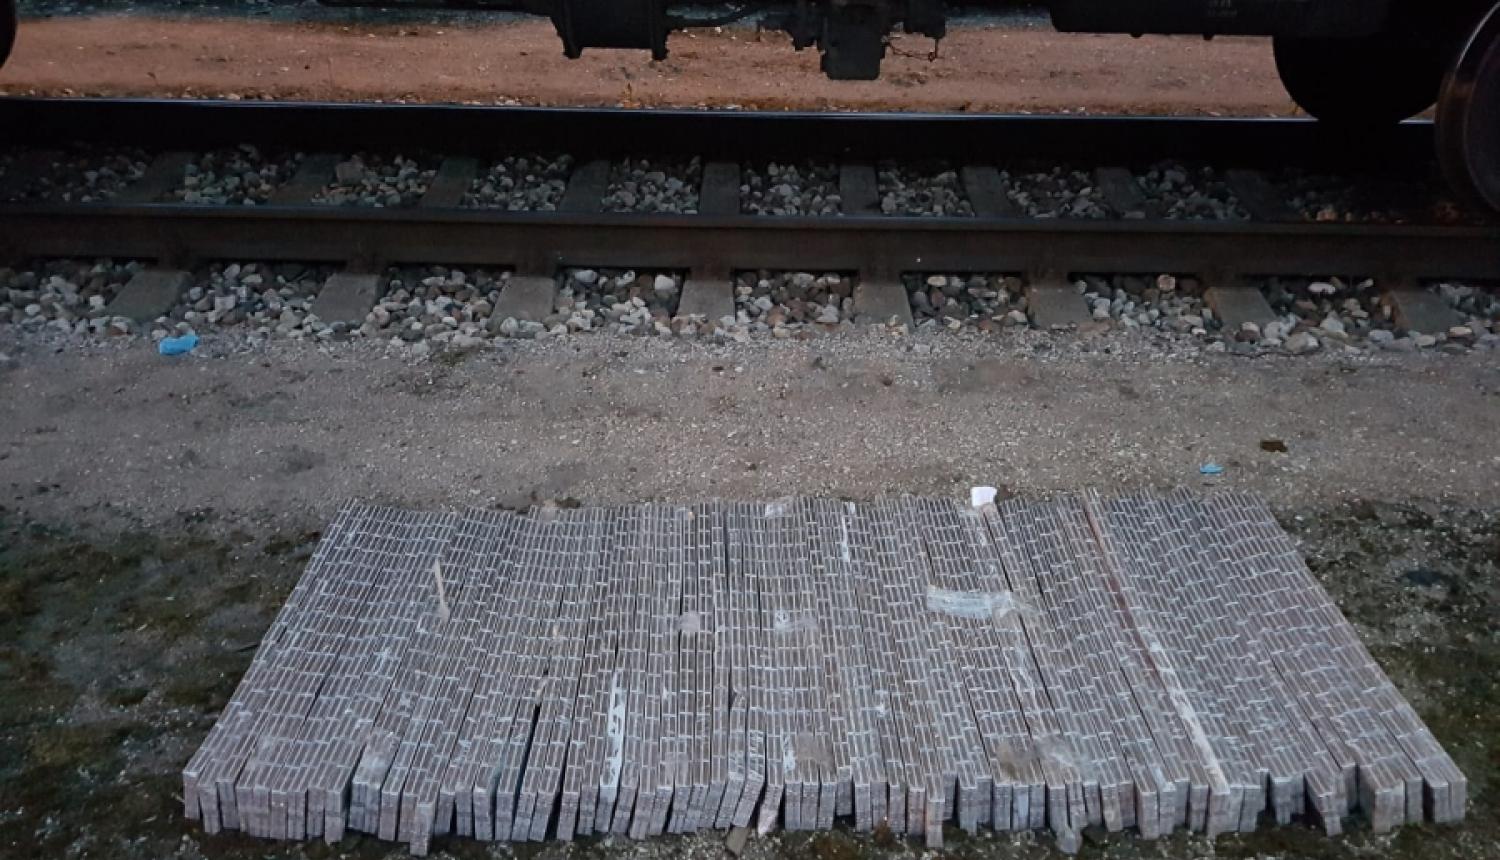 Rīgā kravas vilciena vagonā starp baļķiem atrastas nelegālās cigaretes